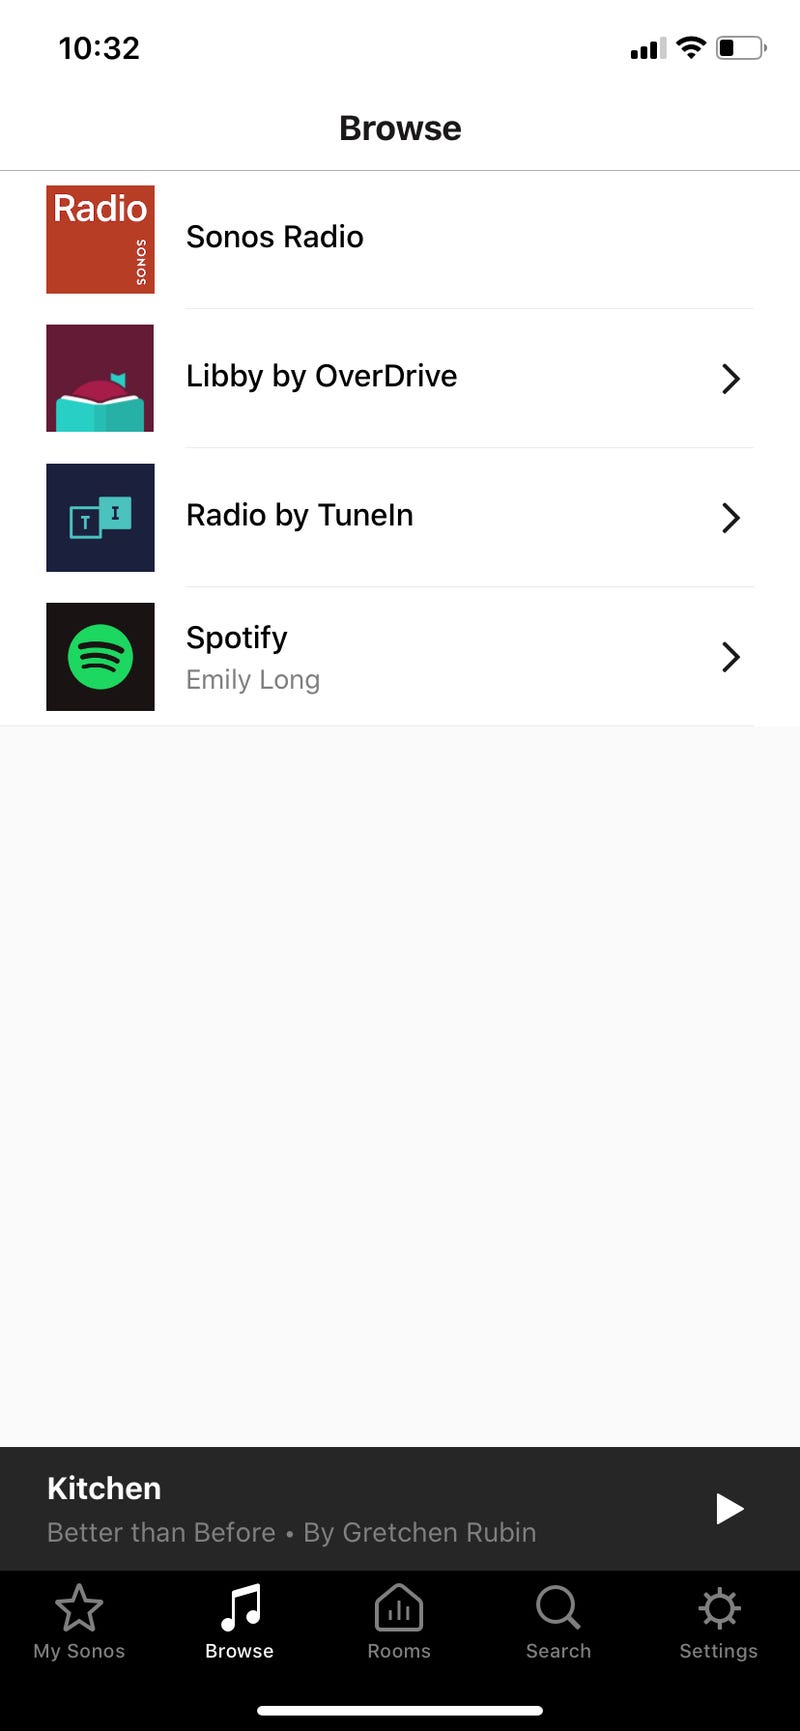 obrazek do artykułu zatytułowanego jak słuchać audiobooków z biblioteki na Sonos